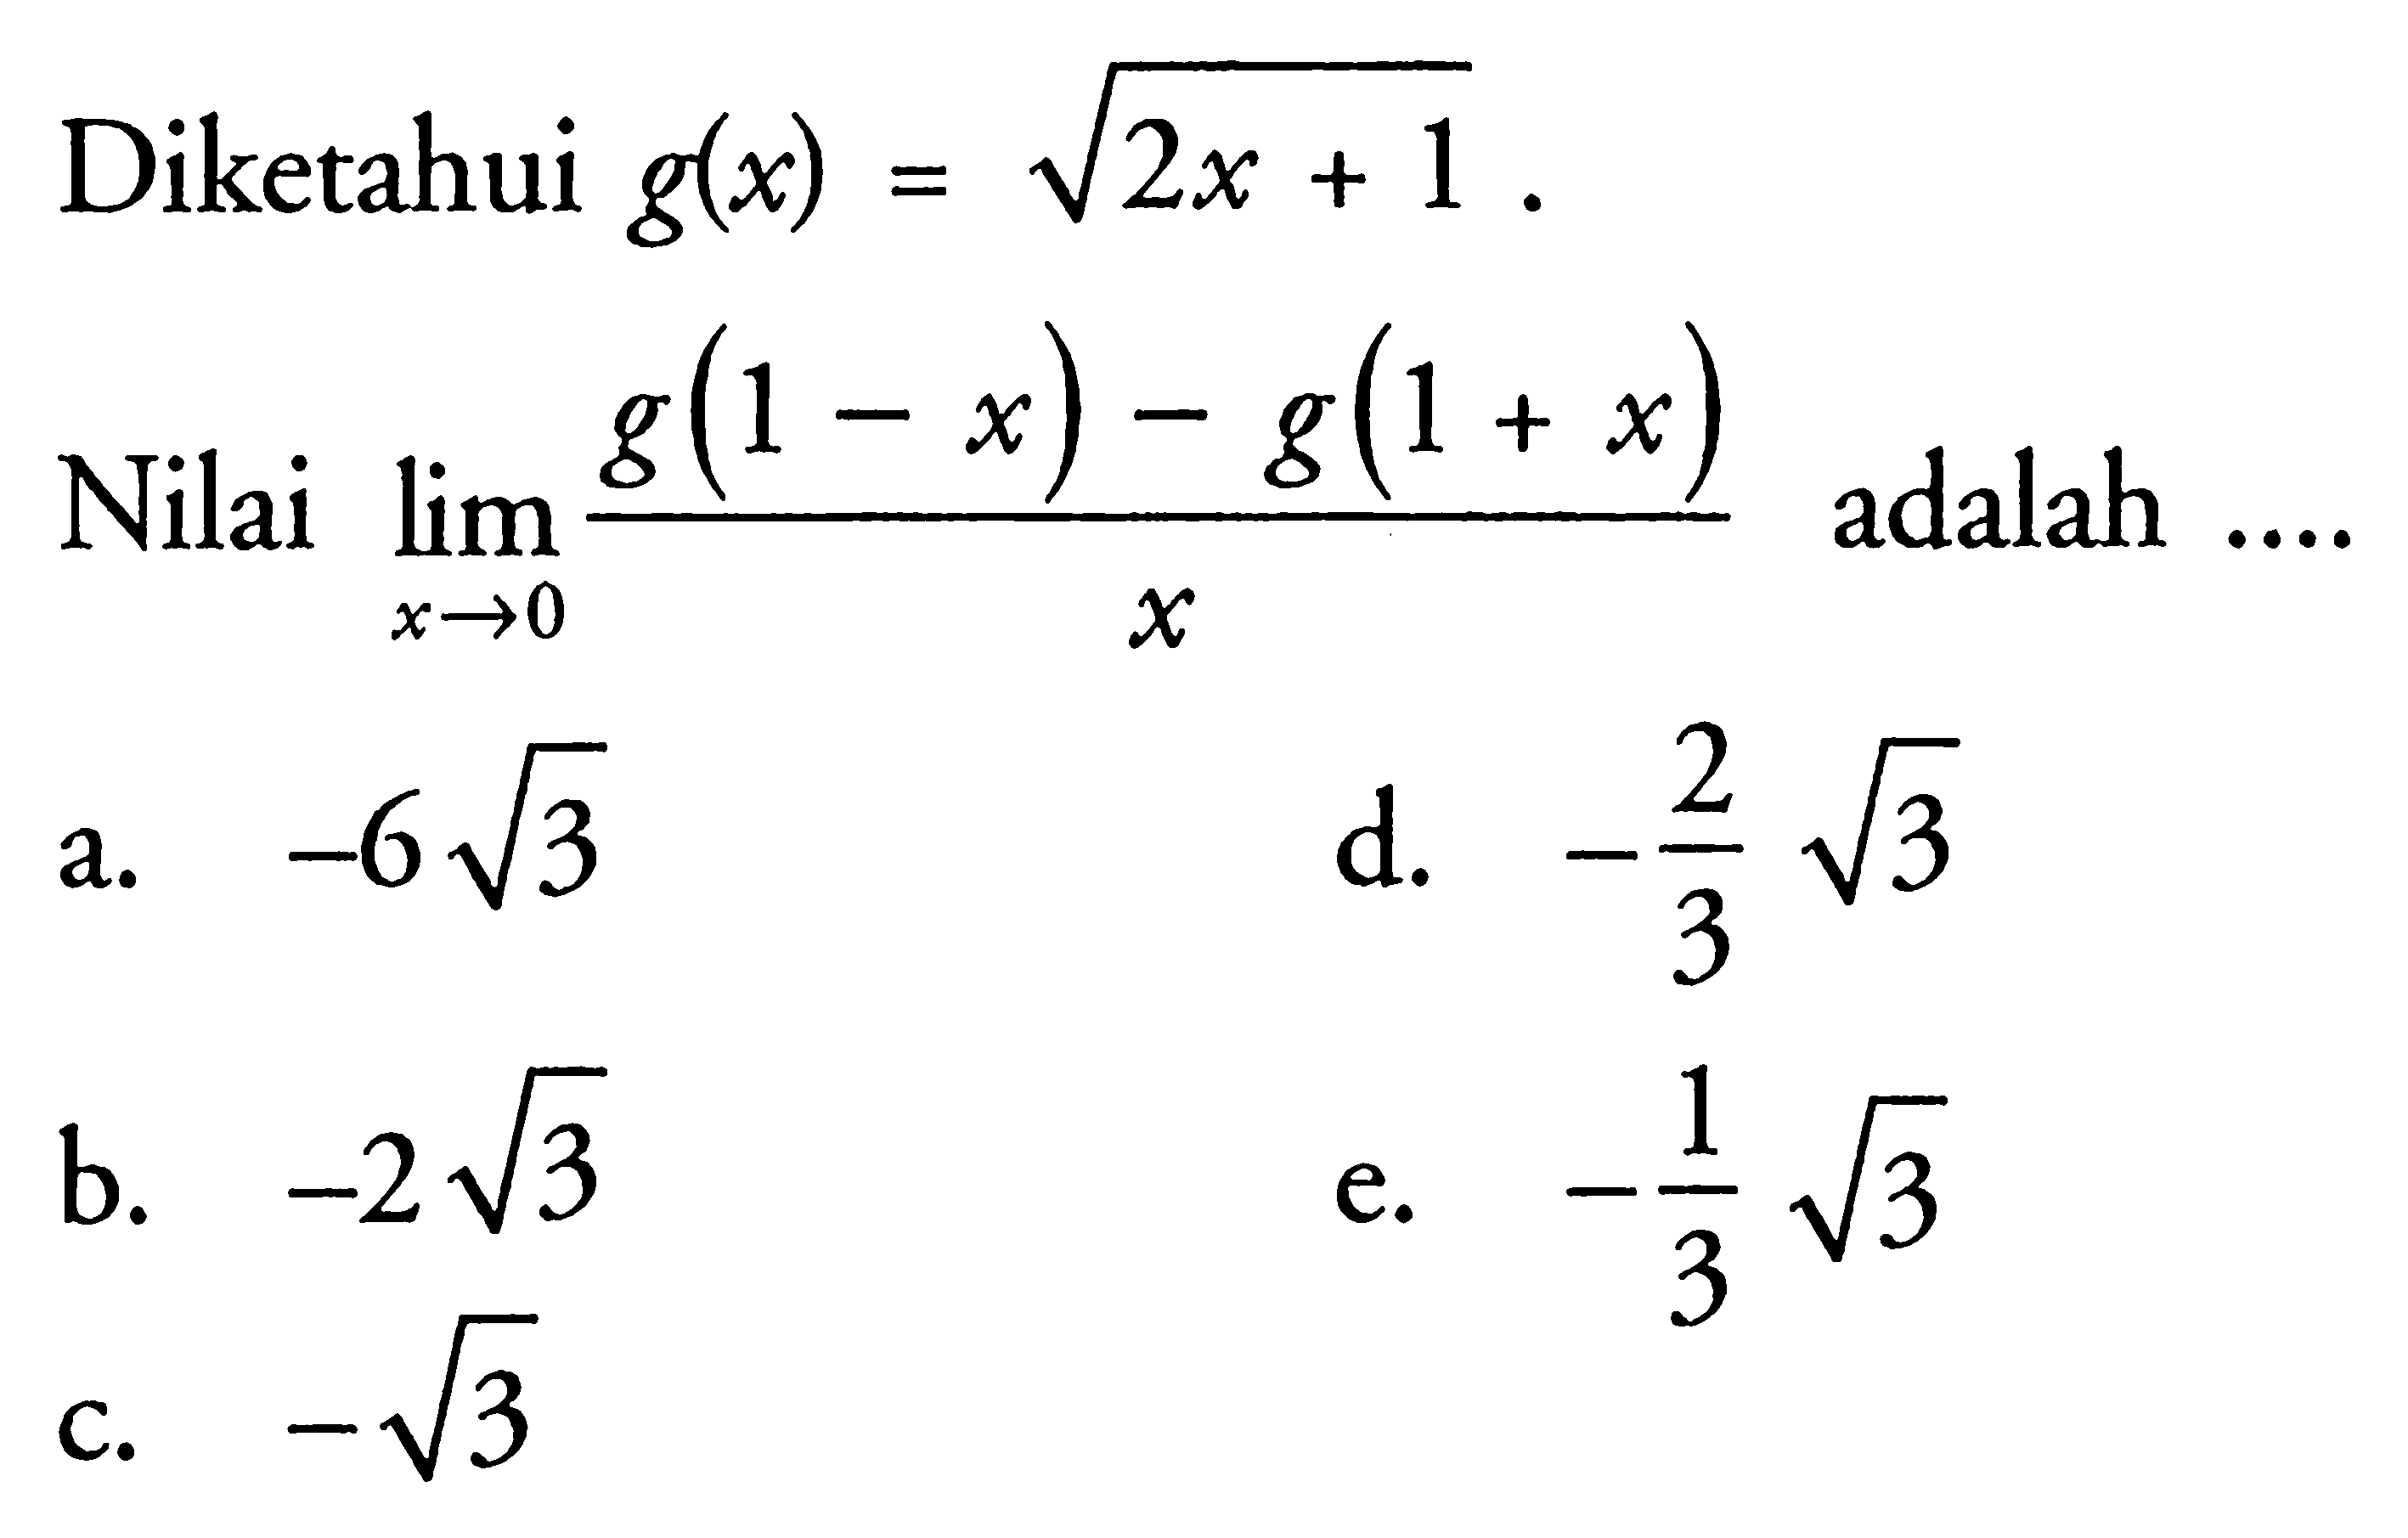 Diketahui g(x)=akar(2x+1). Nilai lim x -> 0 (g(1-x)-g(1+x)) /x adalah ...